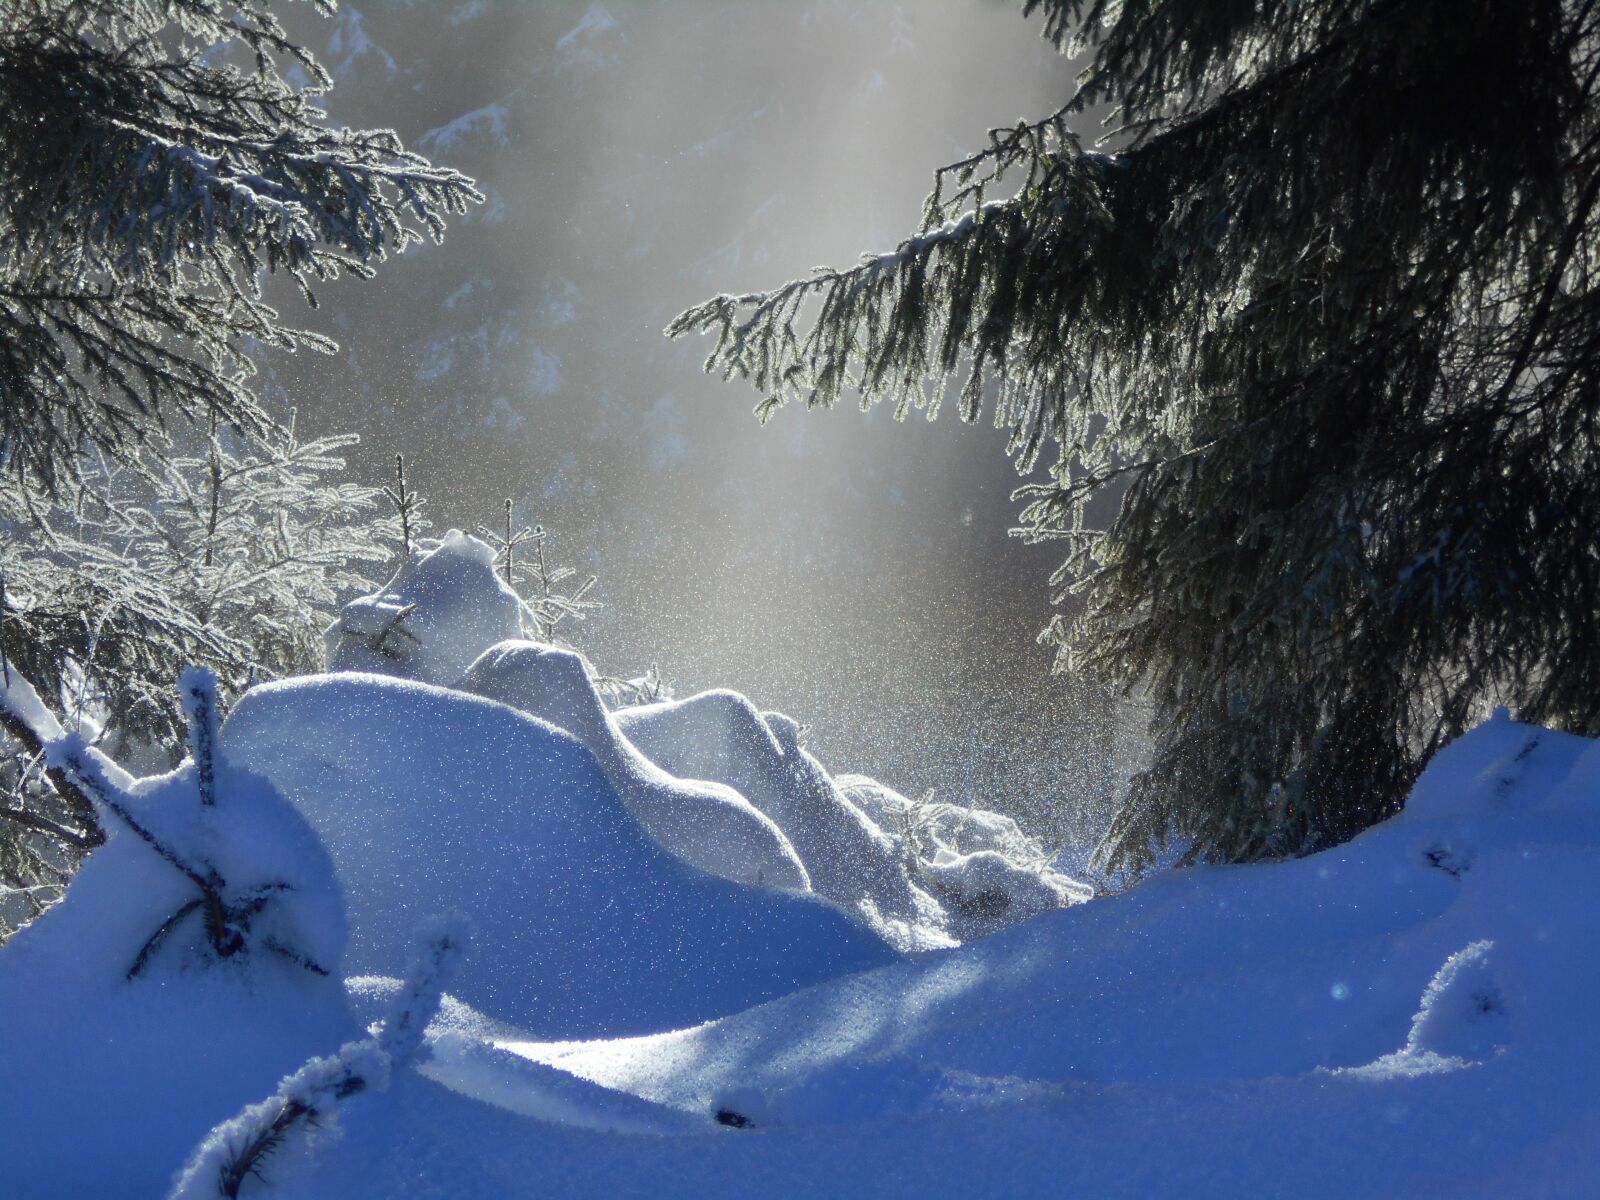 Nikon COOLPIX S2800 sample photo. Snow, light, nature photography